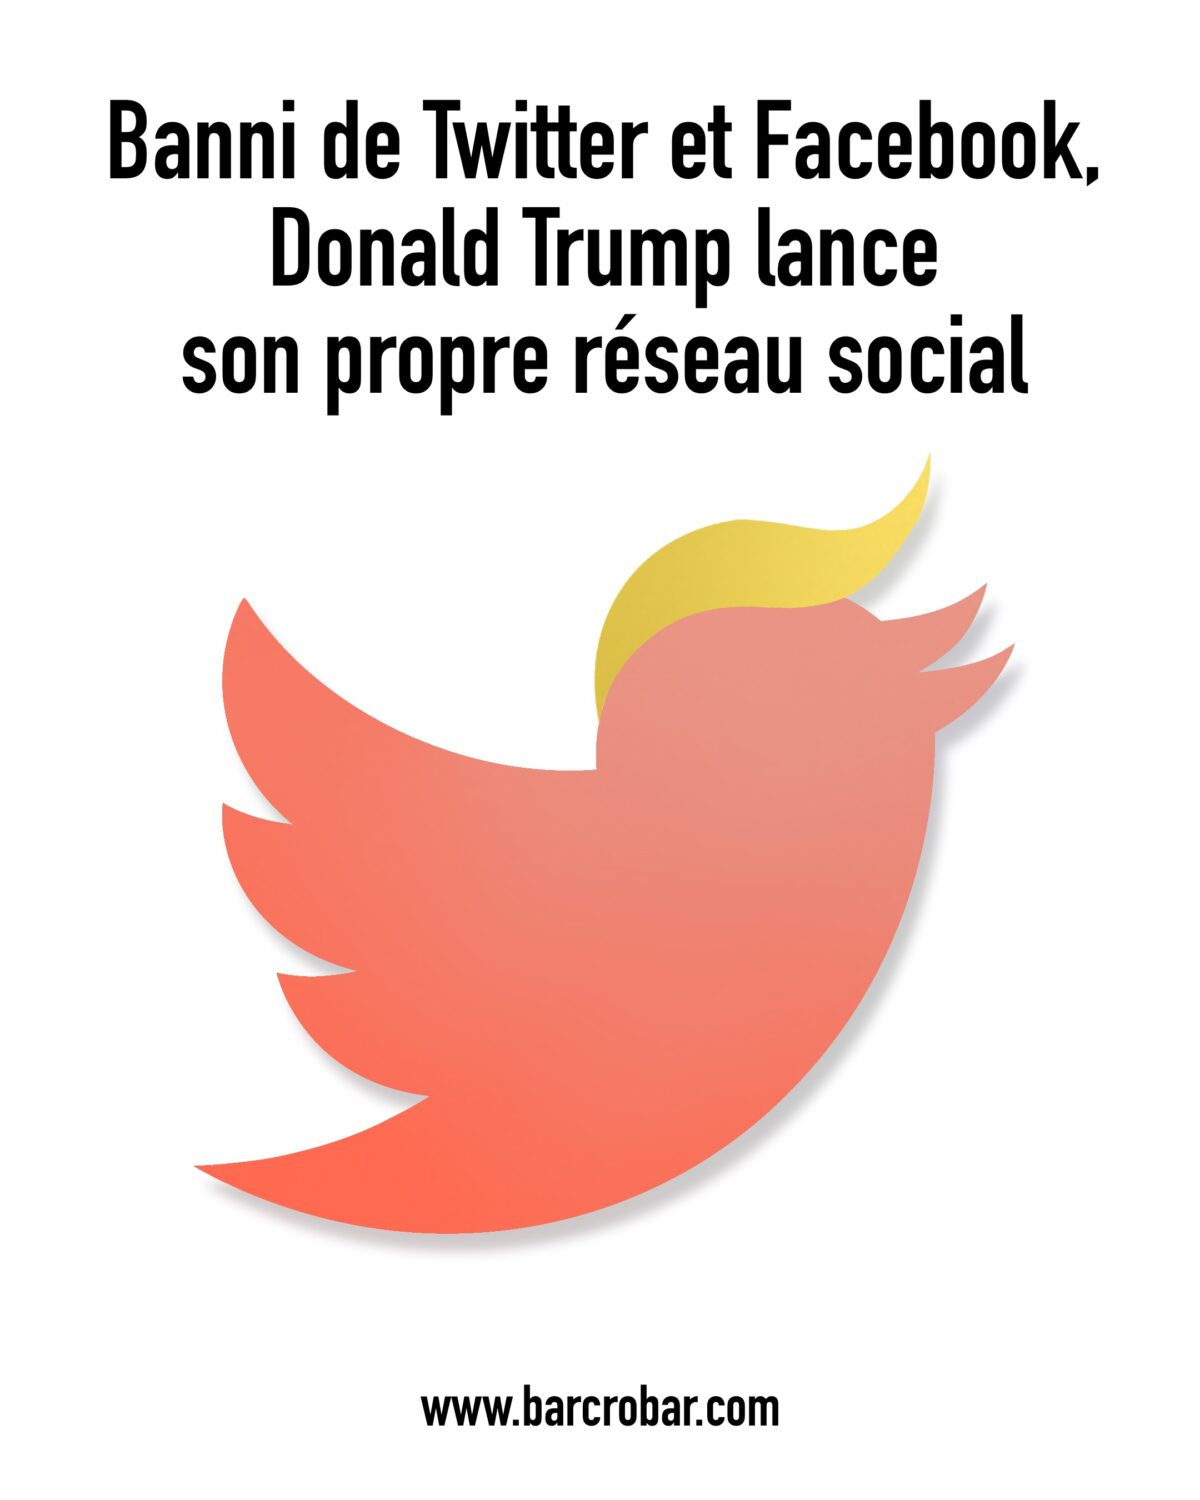 Banni de Twitter et Facebook, Donald Trump lance son propre réseau social